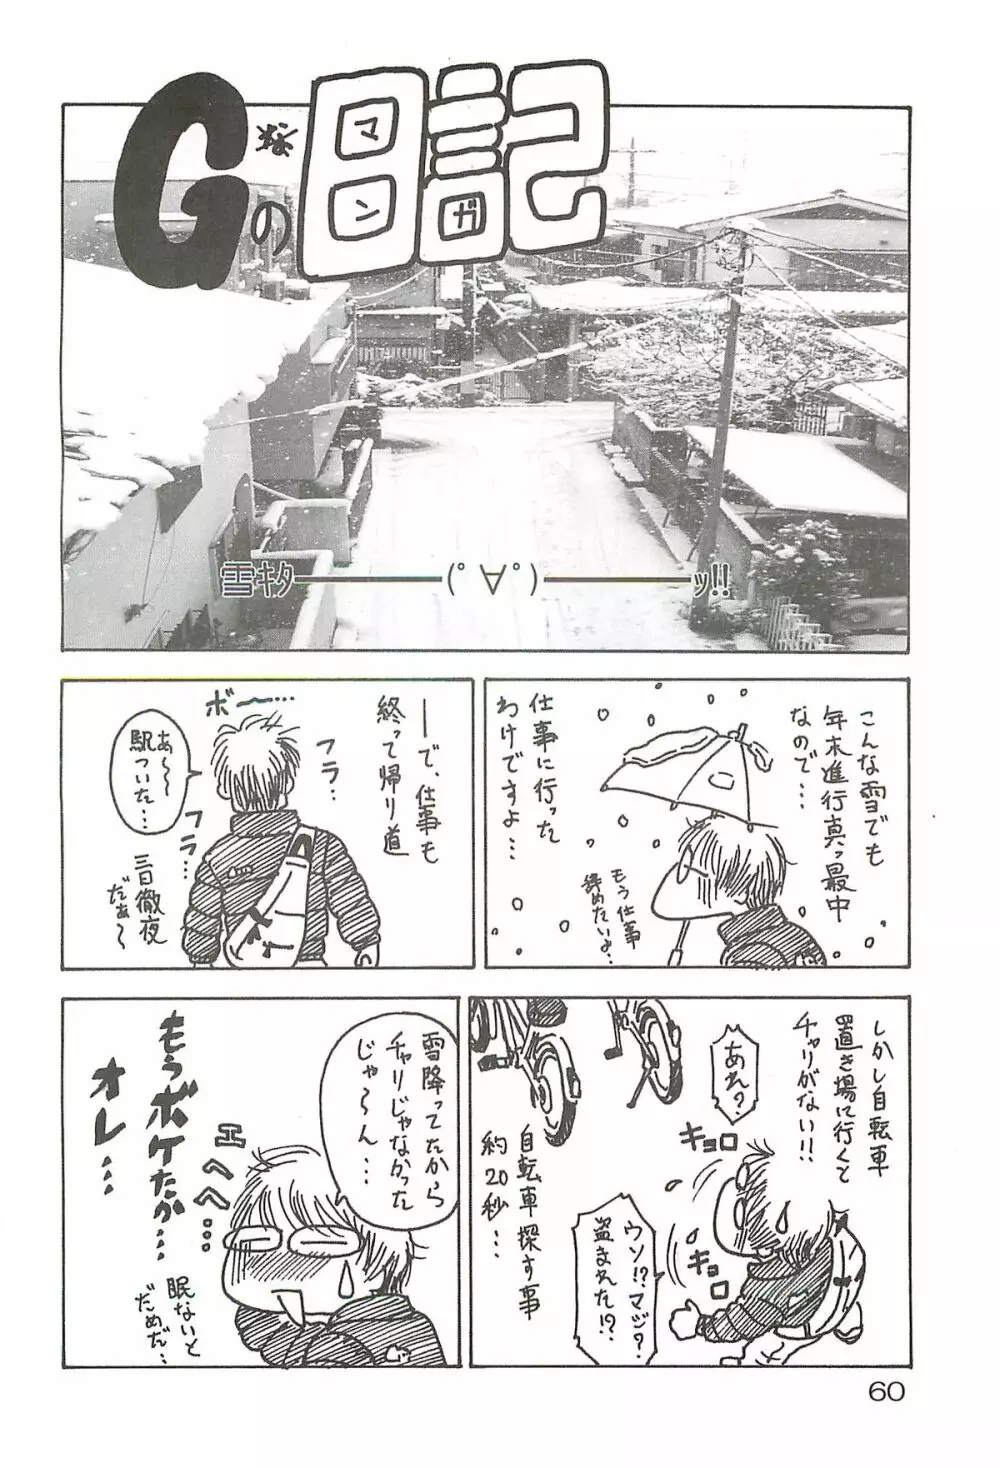 追放覚悟 Special edition Phase1 - page59